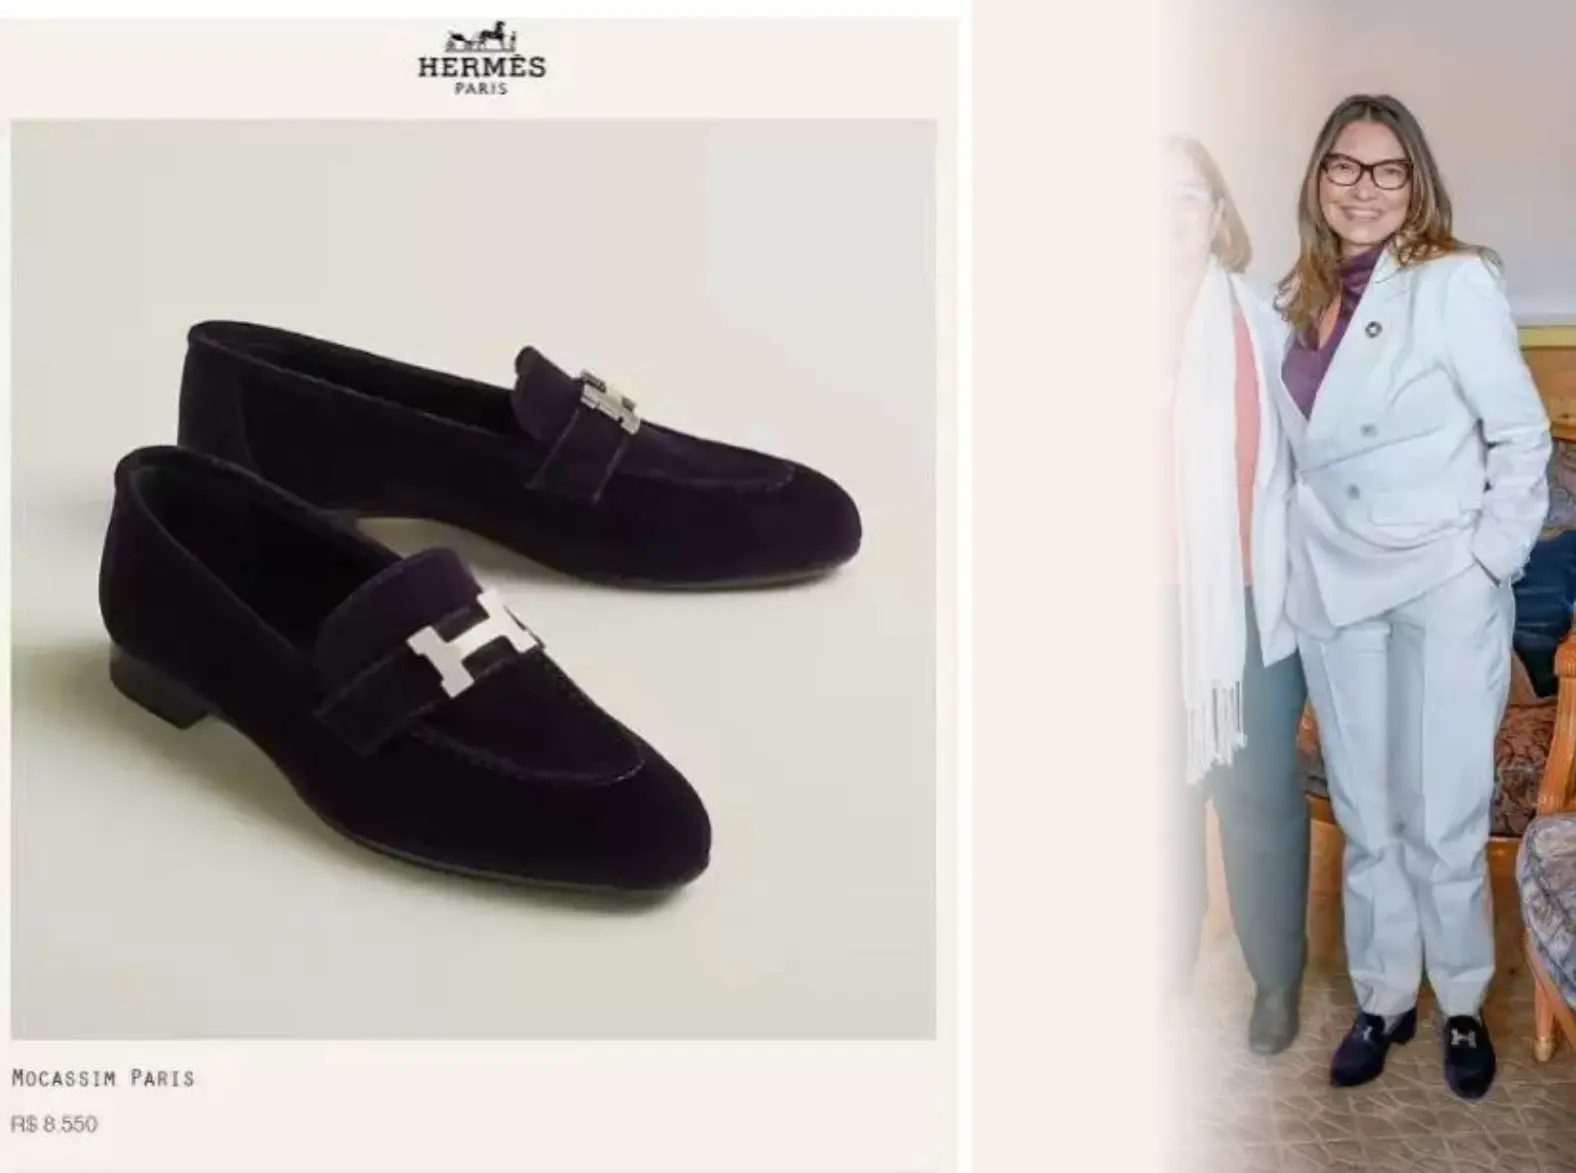 Janja ostenta sapato luxuoso de R$ 8,5 mil em evento que discute pobreza